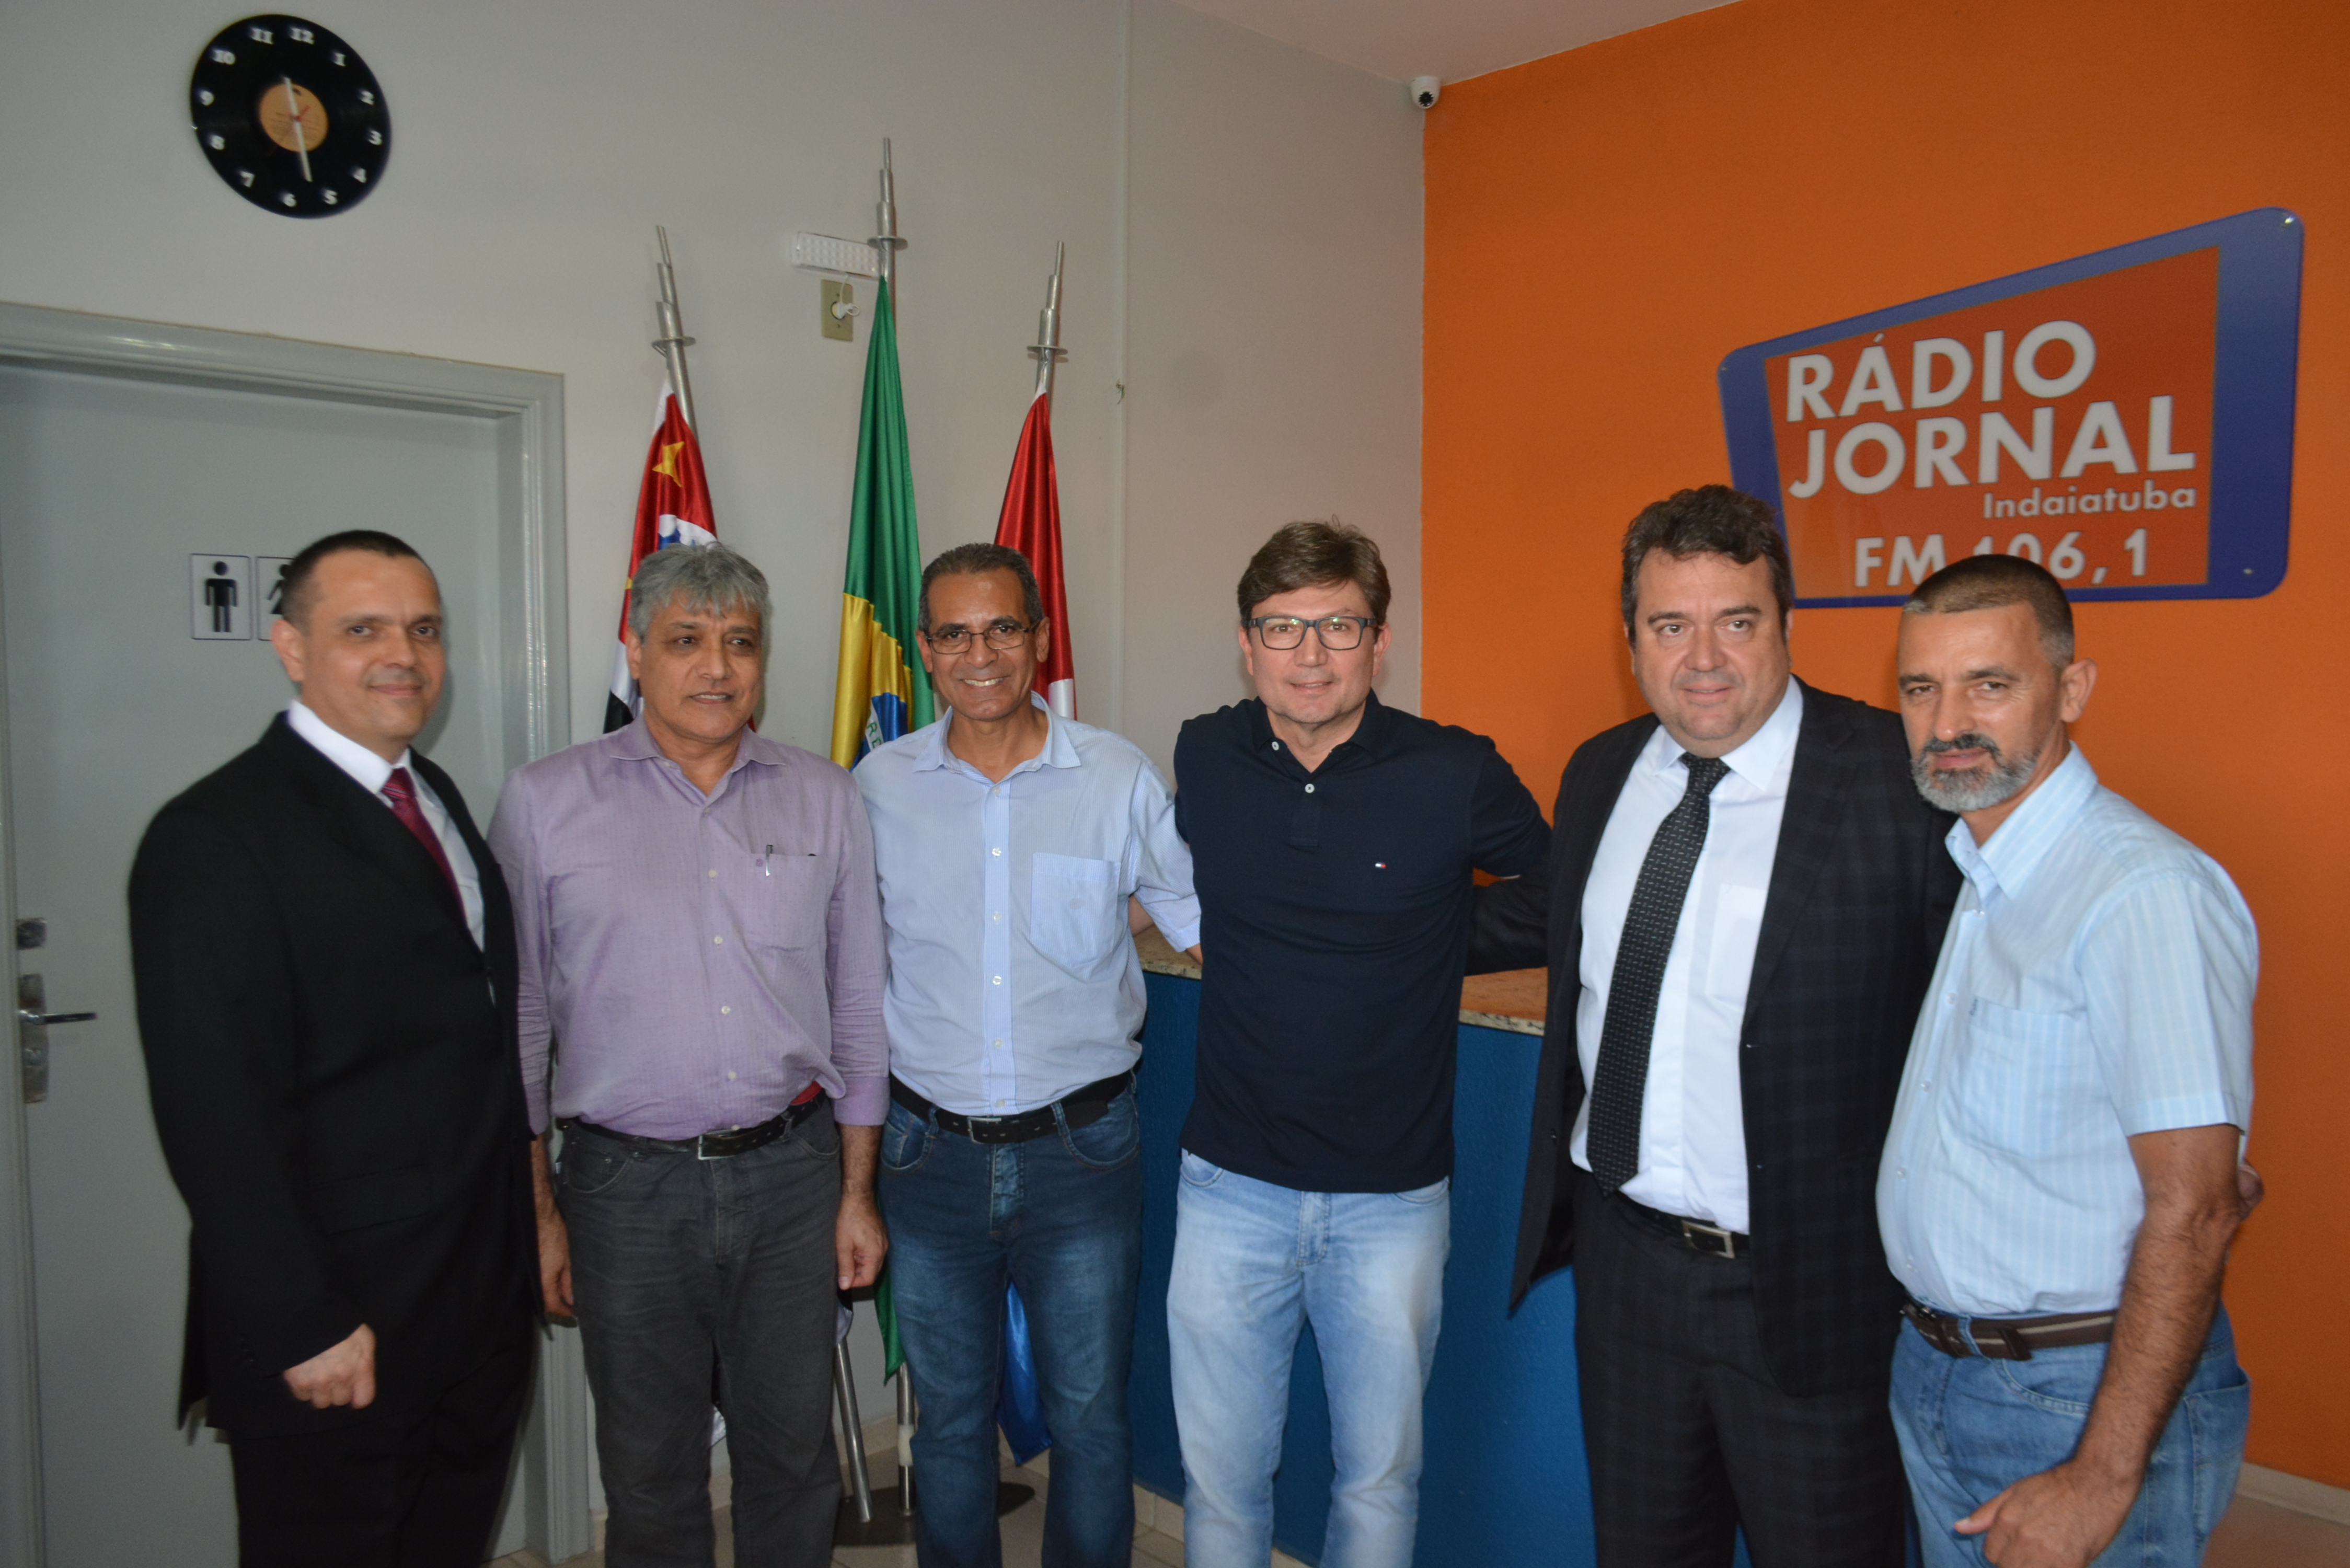 Vereadores prestigiam migração para nova frequência da Rádio Jornal